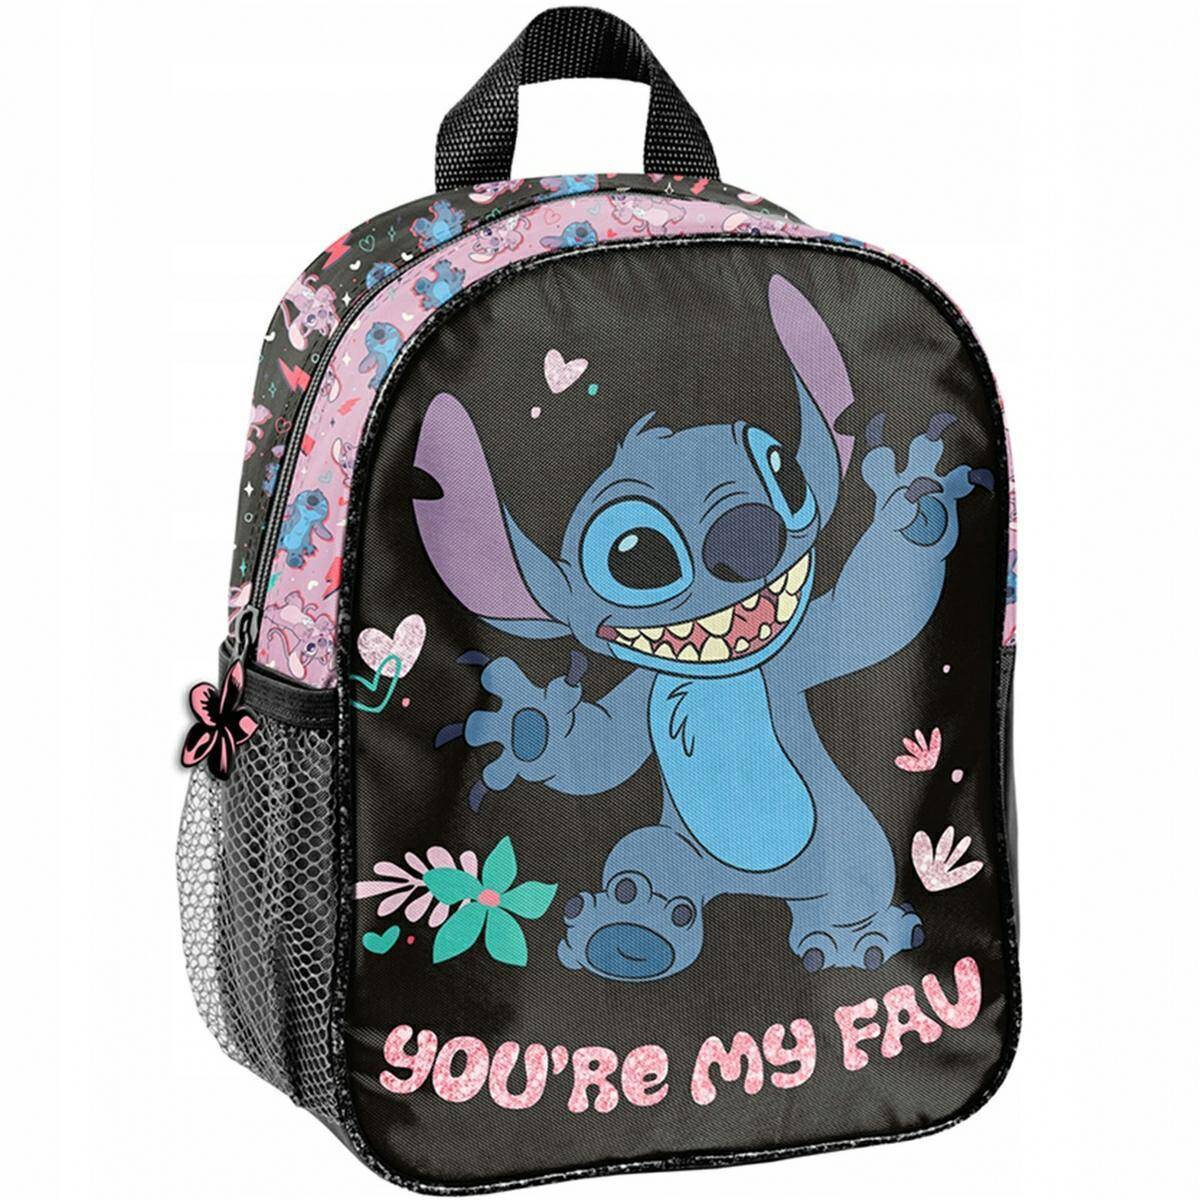 PASO plecak przedszkolny Stitch